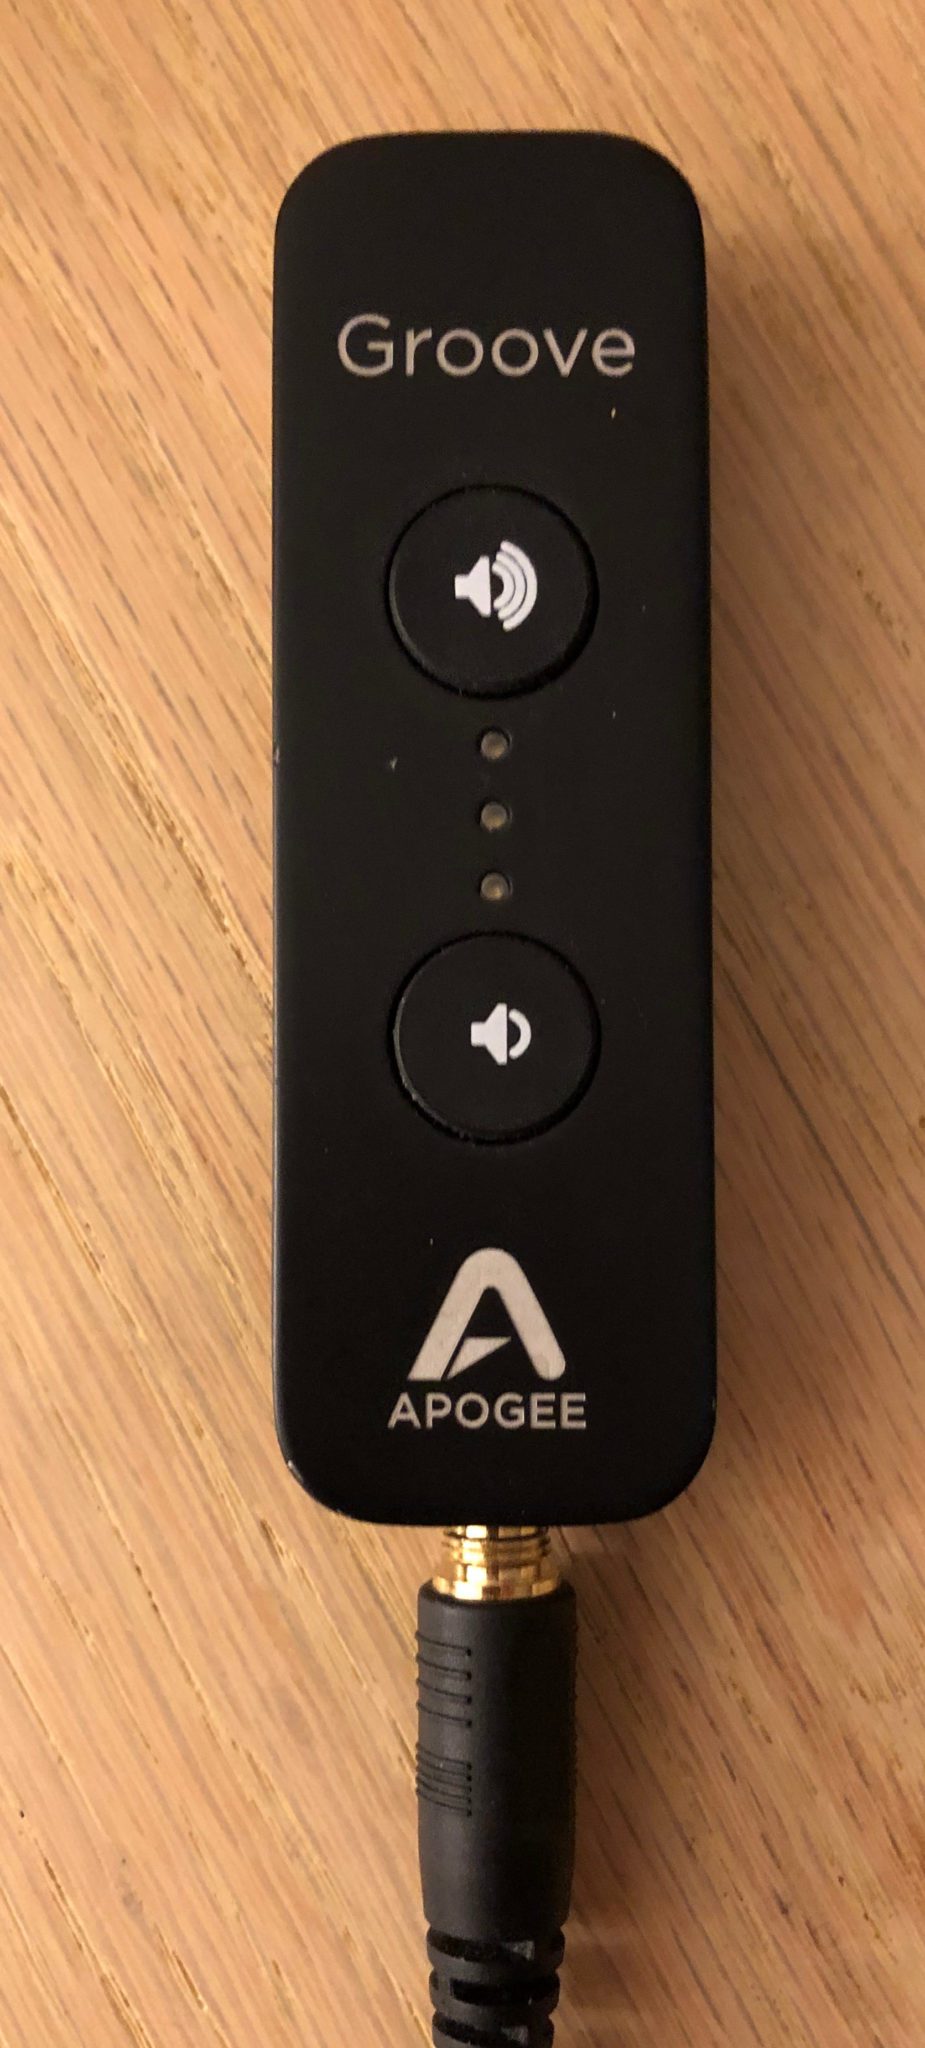 オーディオ機器 その他 Apogee Groove | Audiofool Reviews